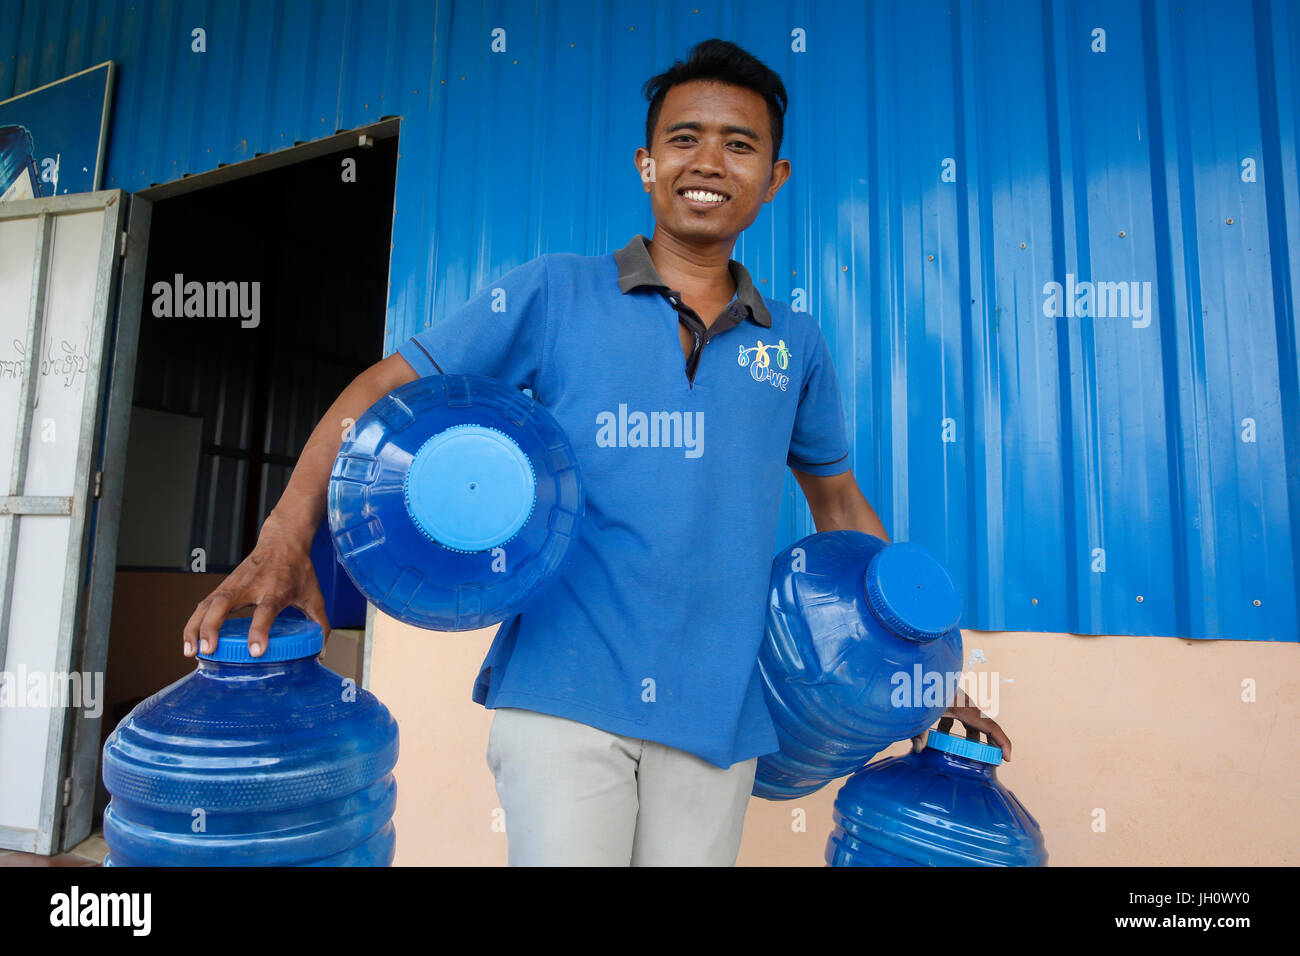 1001 Brunnen Wasser Unternehmen. Mitarbeiter tragen Korbflaschen. Kambodscha. Stockfoto